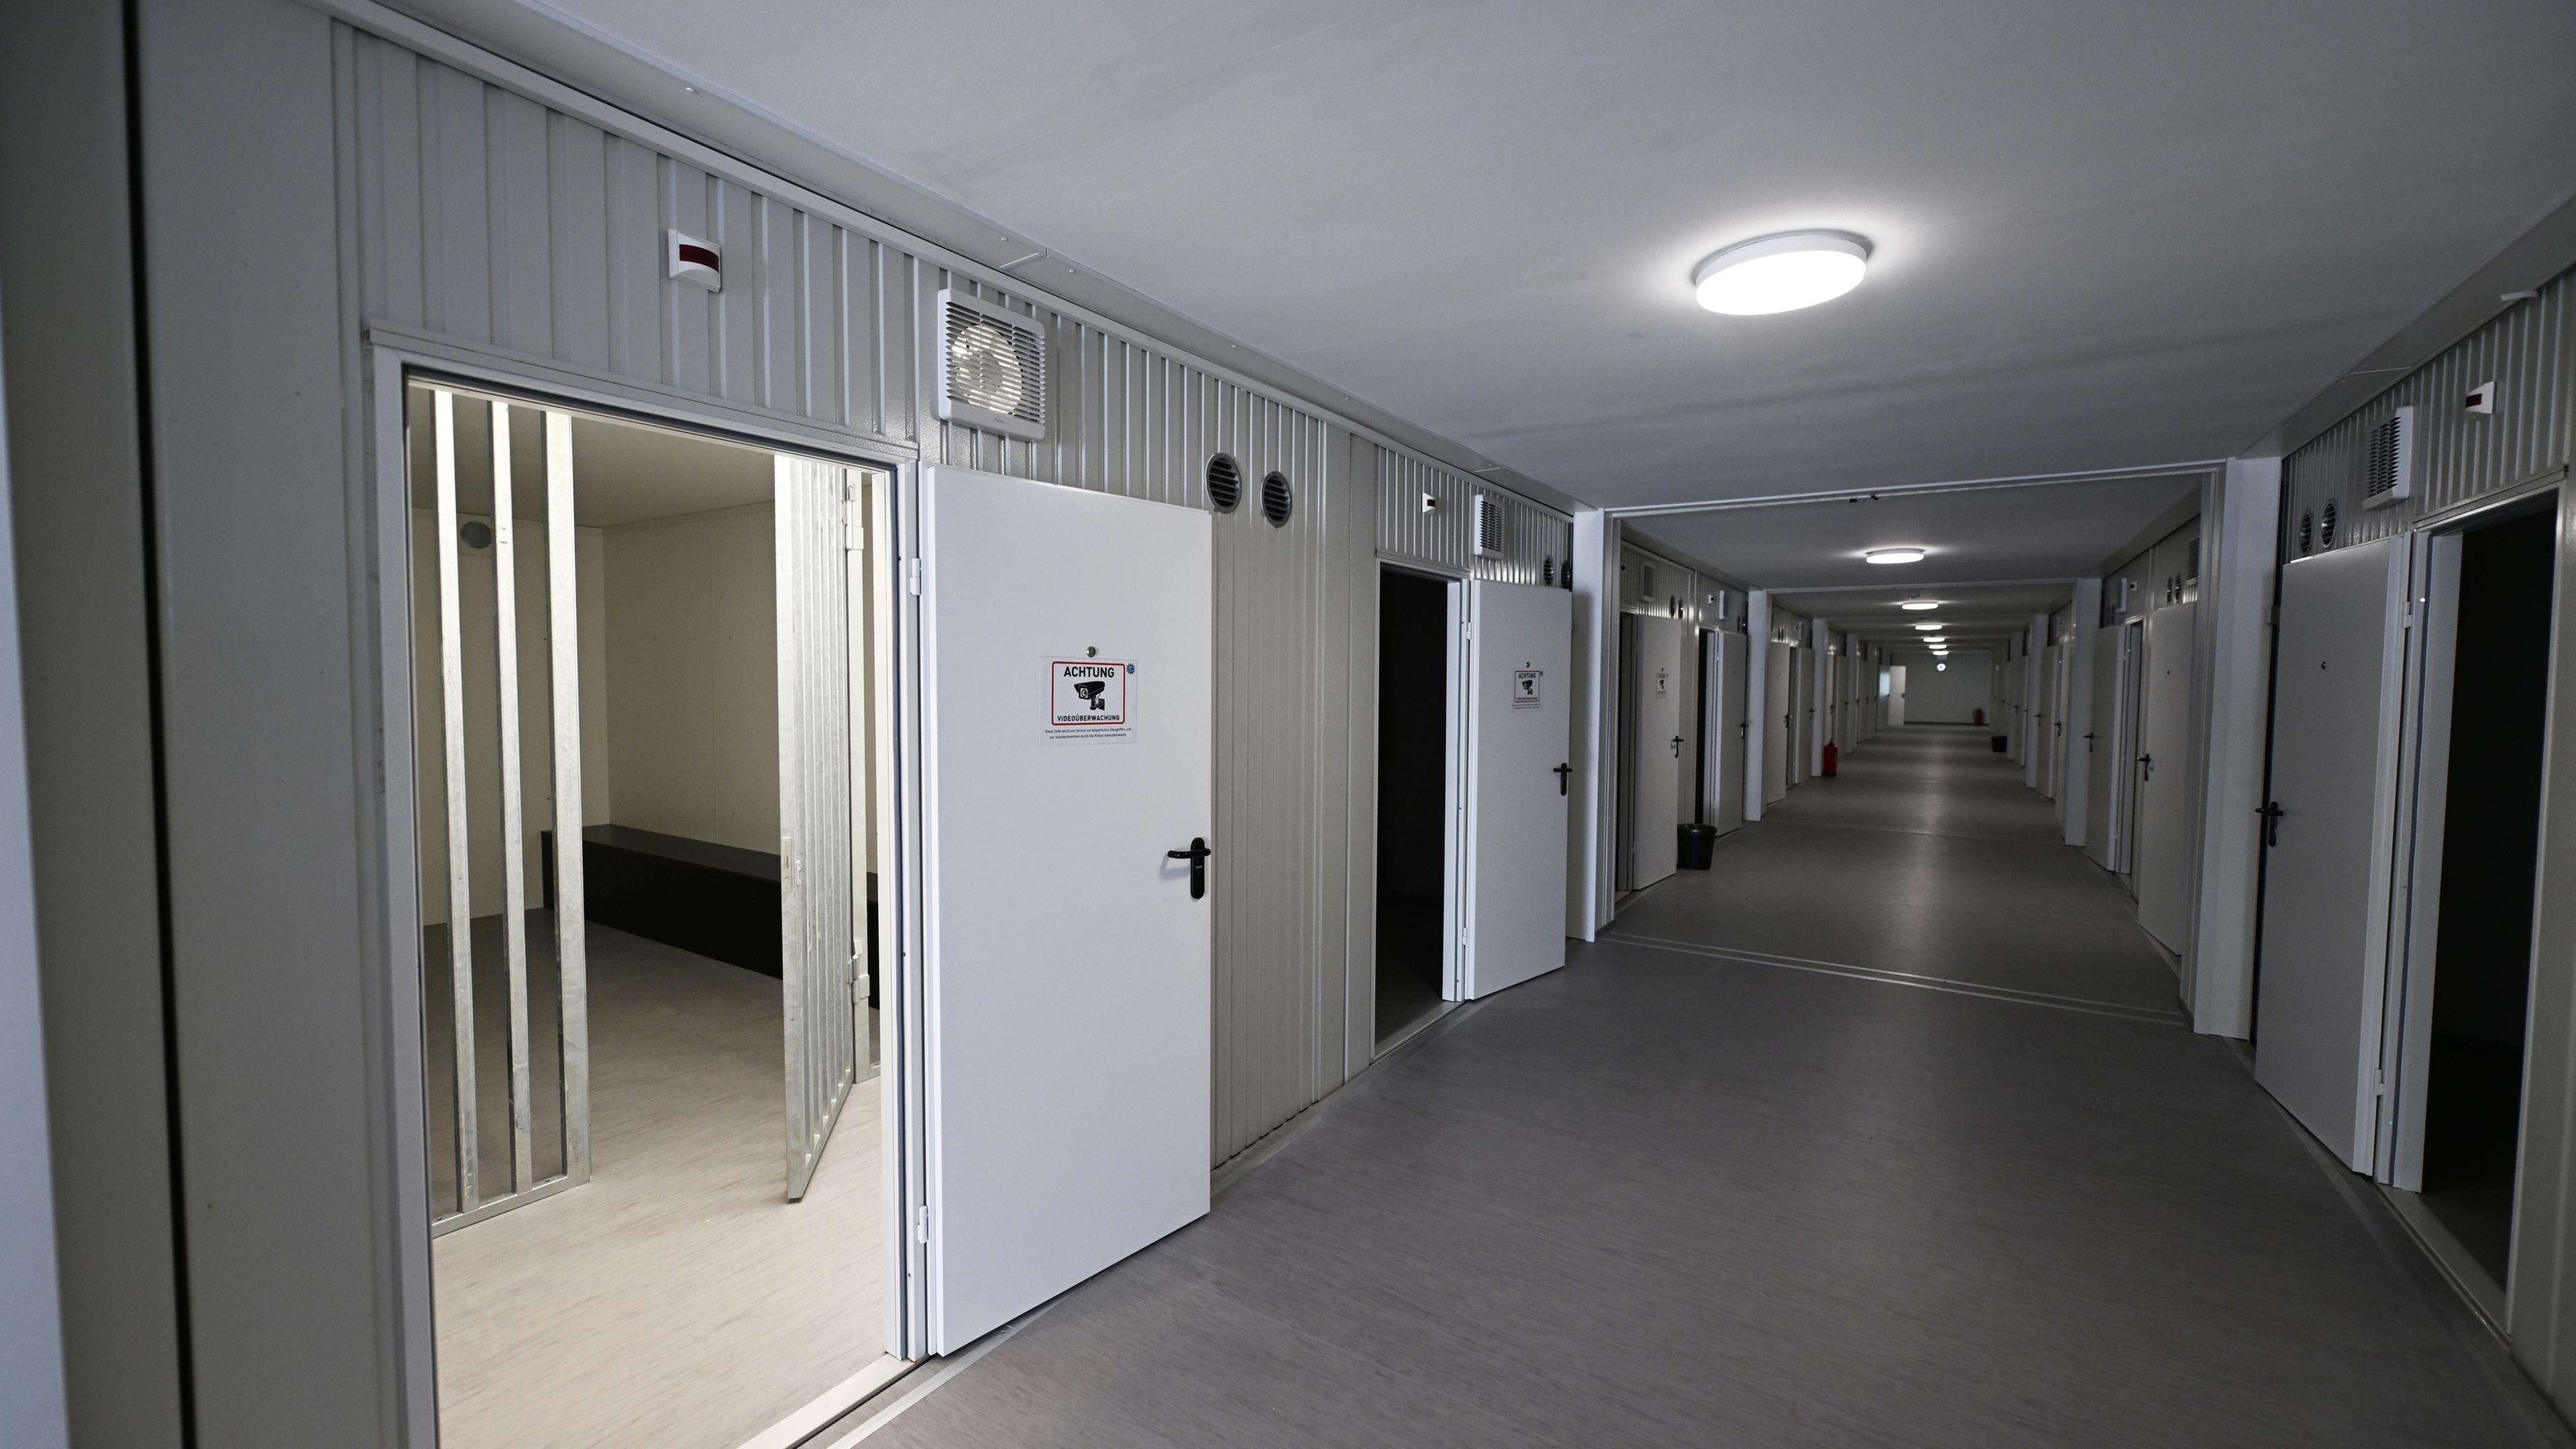 Blick in einen Gang mit den Arrestzellen in dem so genannten Verwahrkomplex der Polizei in Garmisch-Partenkirchen. 